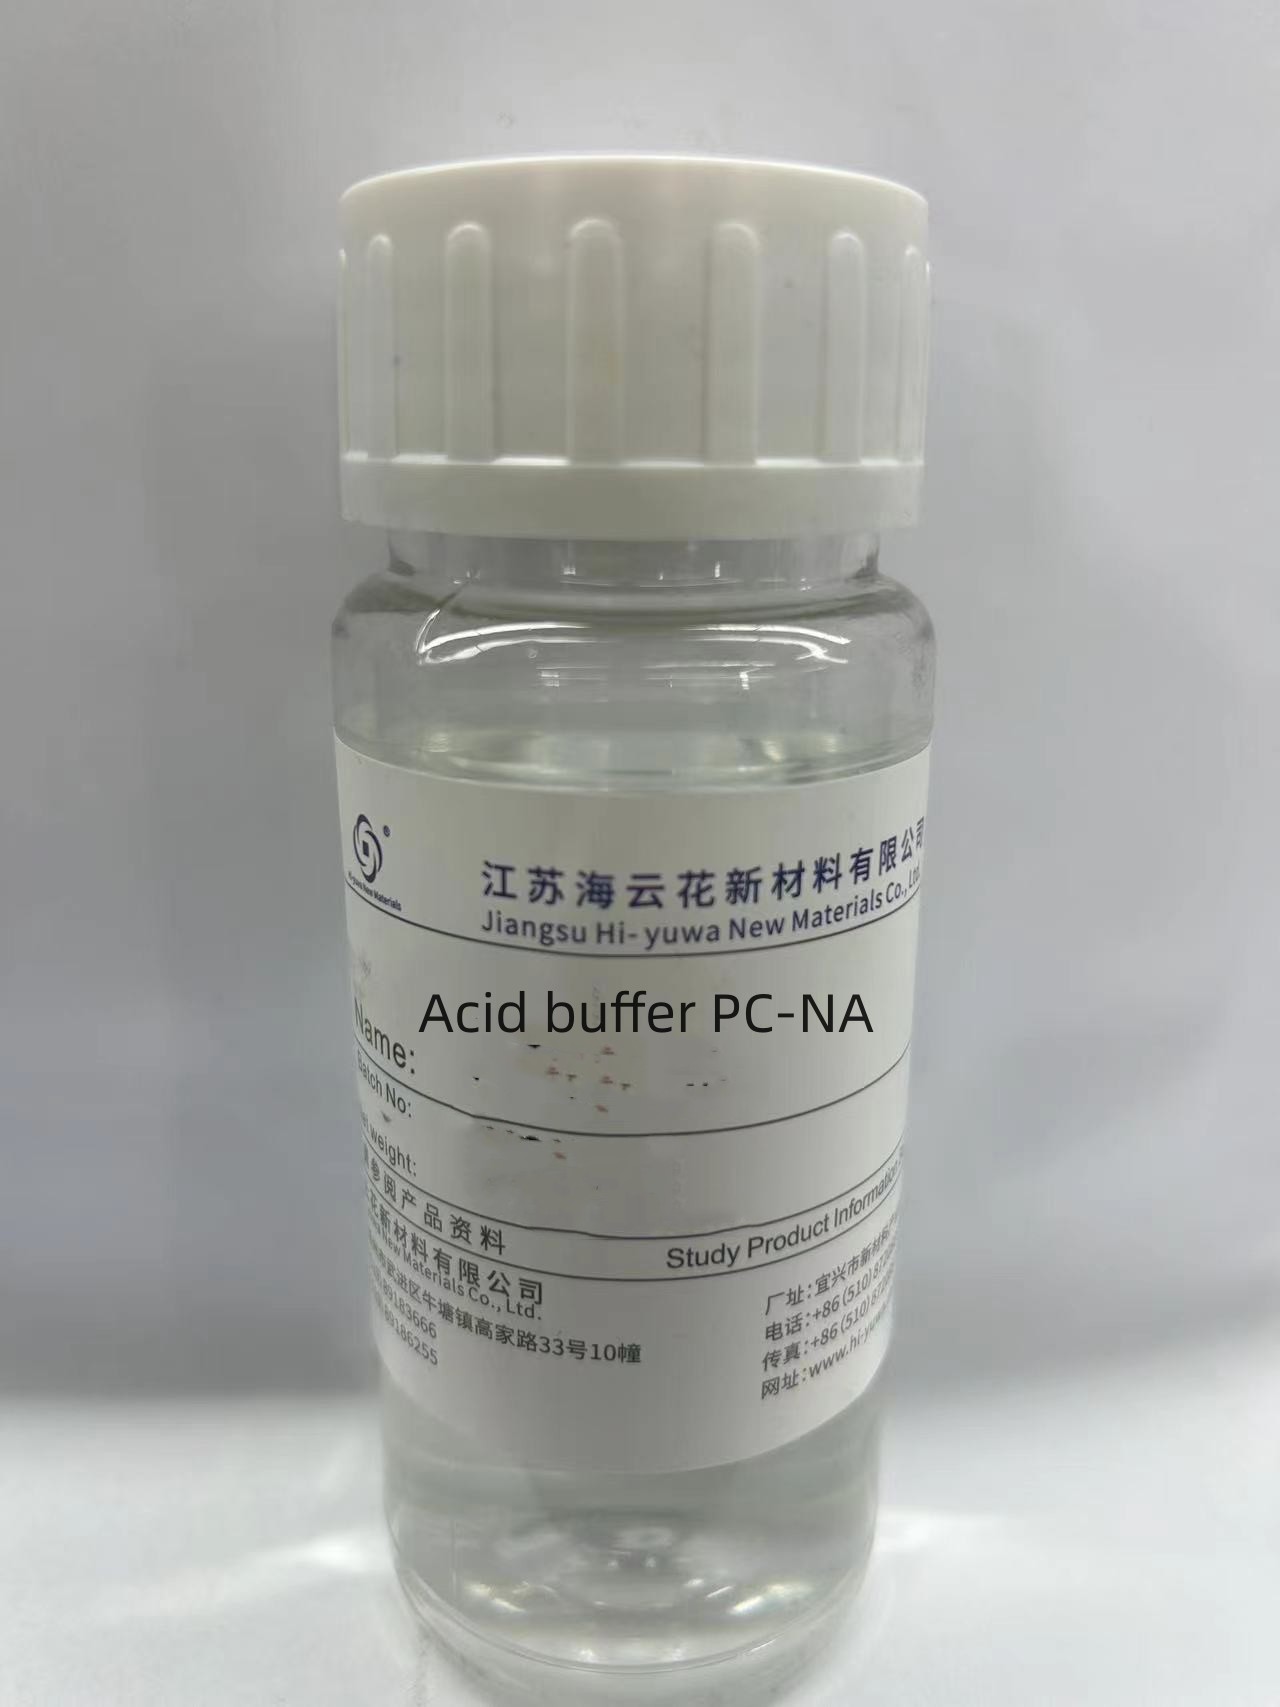 Acid buffer PC-NA